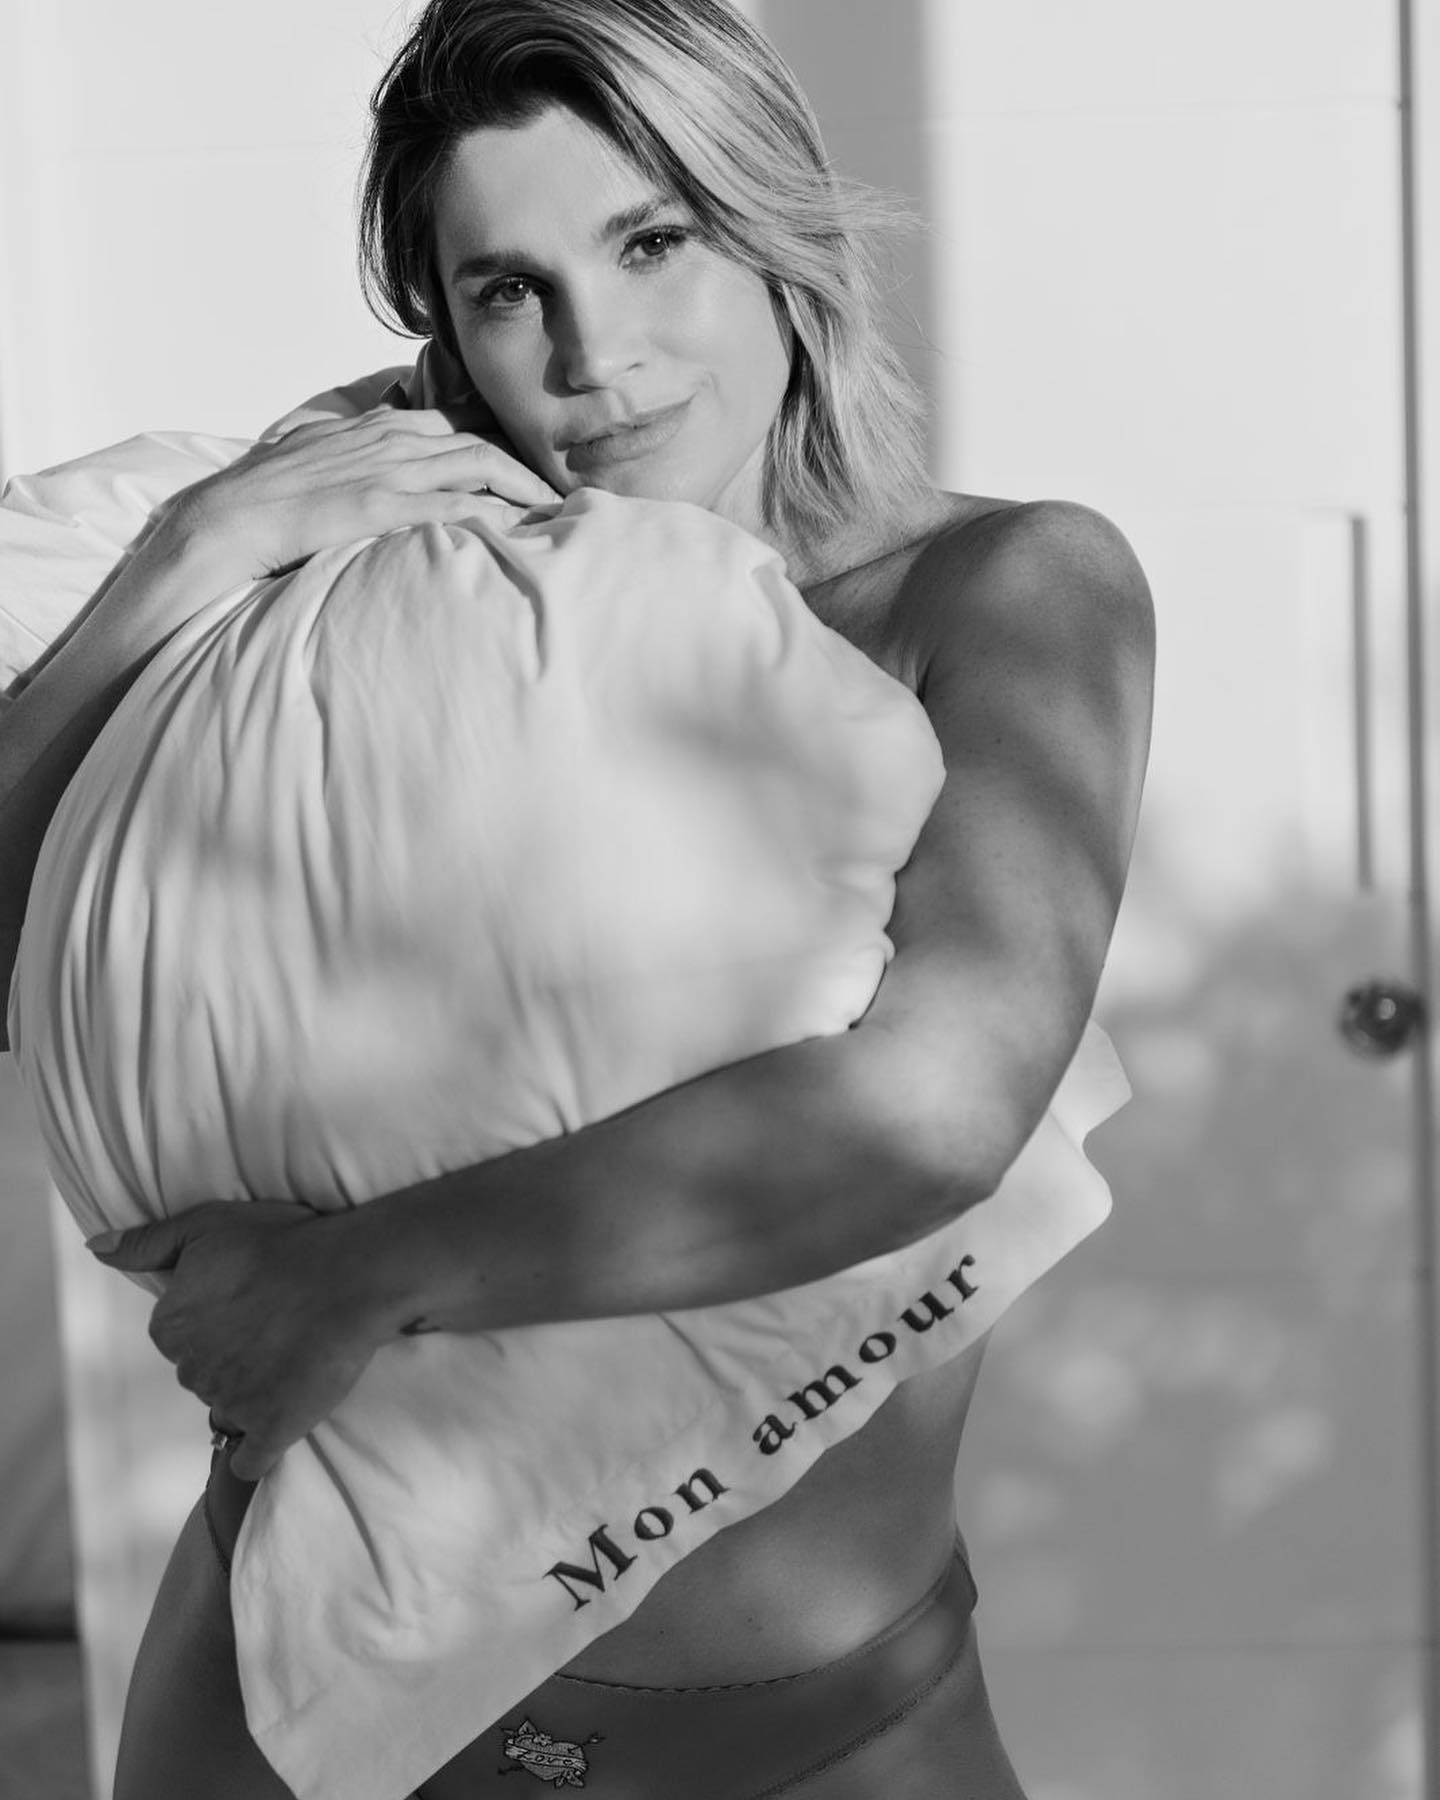 Flávia Alessandra posou sensual de lingerie para se despedir de casa antes de se mudar - Foto: Reprodução/ Instagram@flaviaalessandra